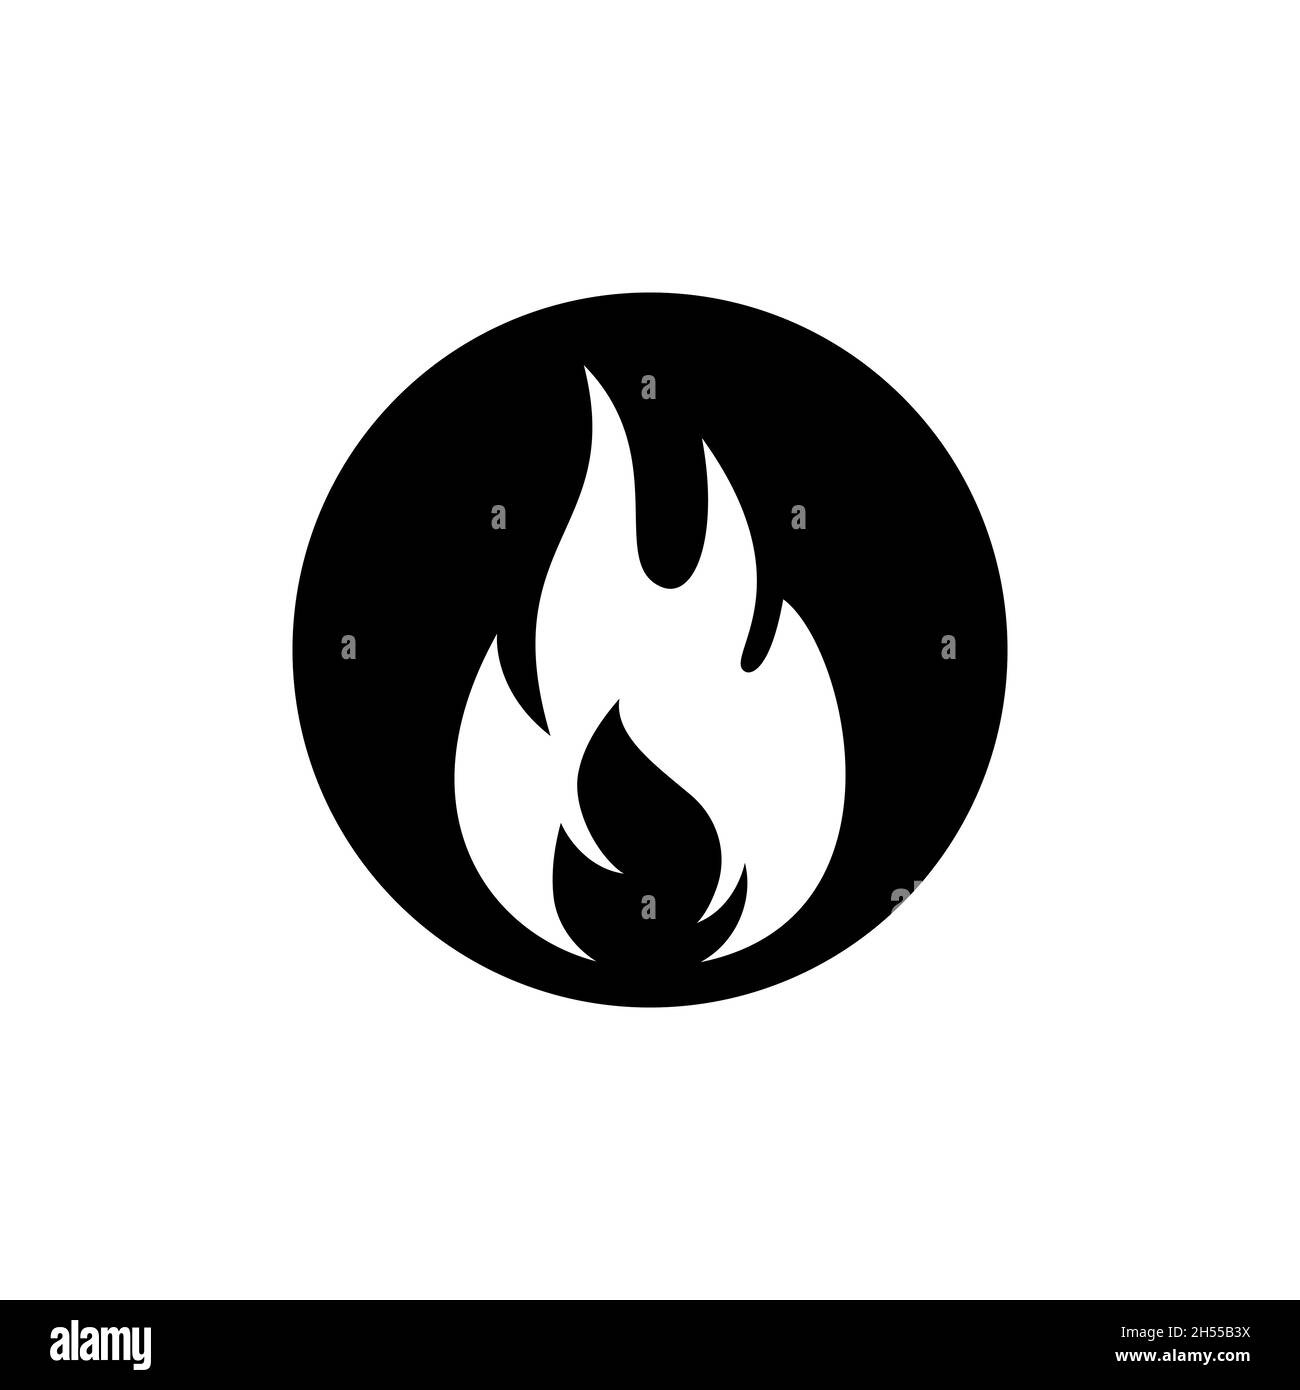 Modello di disegno con disegno vettoriale a fiamma e logo del fuoco. Vettore eps 10. Illustrazione Vettoriale